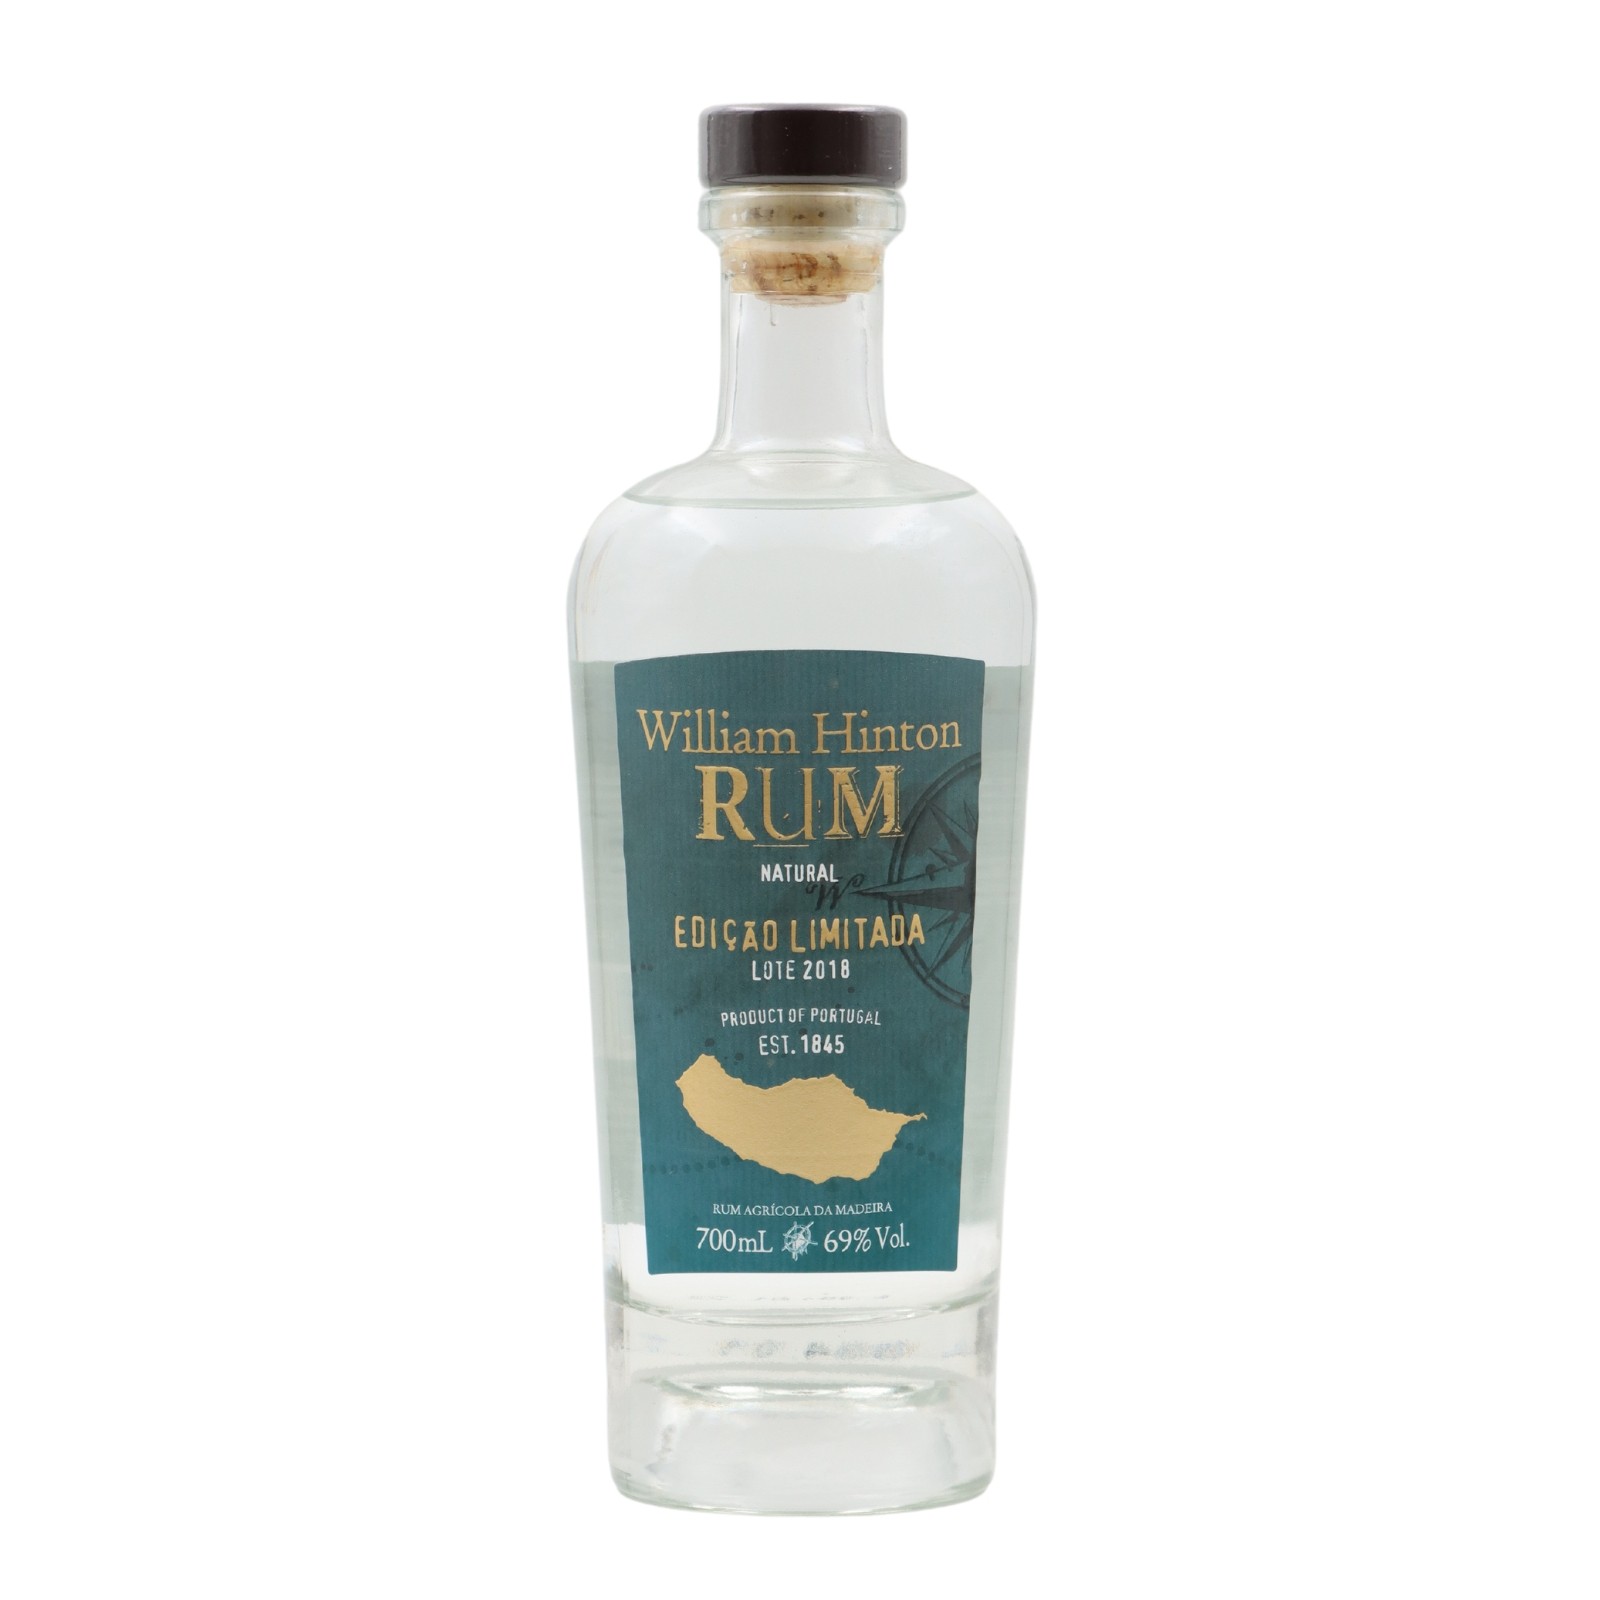 William Hinton Limited Edition Natural Rum